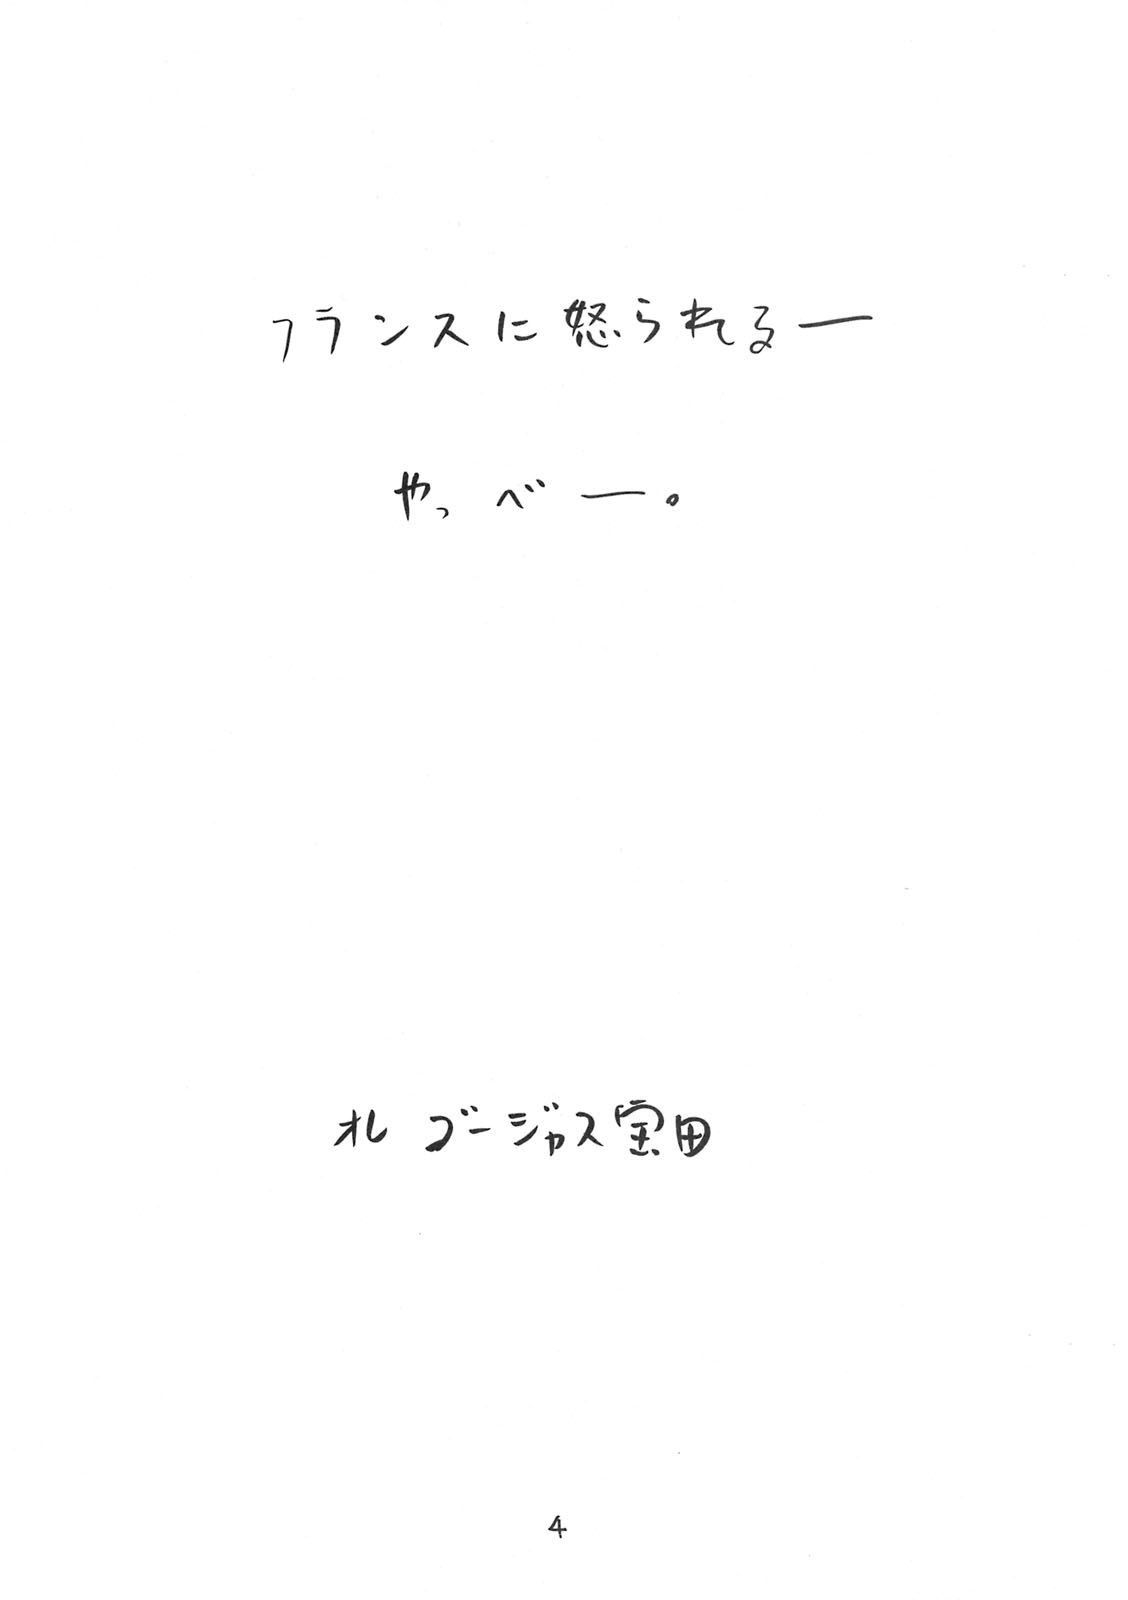 [Takaradamashii] mayaonaka ni tengoku kara ero manga ke shibou no jannu-daruku ga yatteki te chiku 35 (C75) 